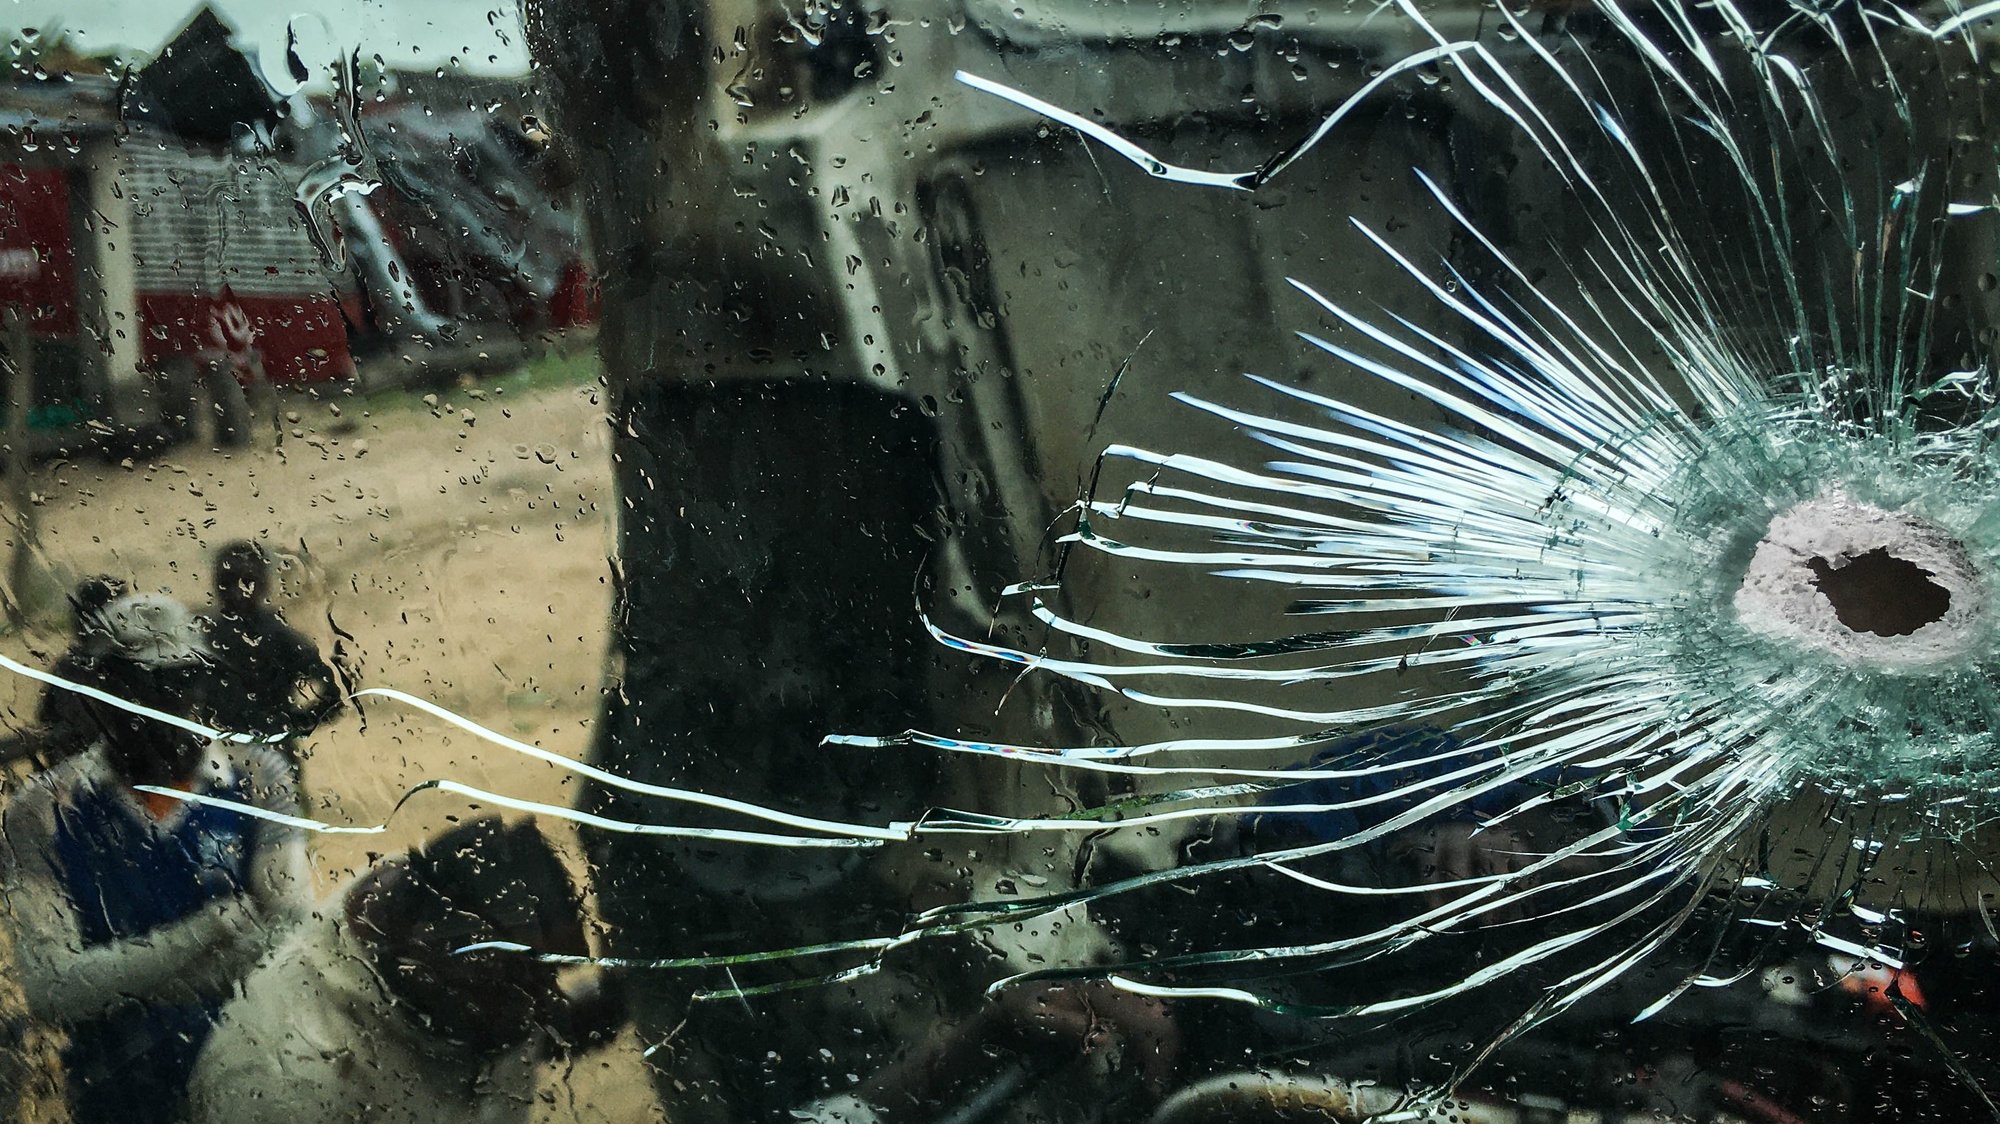 Um buraco no vidro de um camião causado por uma bala após um grupo armado desconhecido ter atacado hoje três camiões de carga na fronteira entre as províncias de Manica e Sofala, na Estrada Nacional n.º 1, no centro de Moçambique, 05 de dezembro de 2019. ESTEVÃO CHAVISSO/LUSA